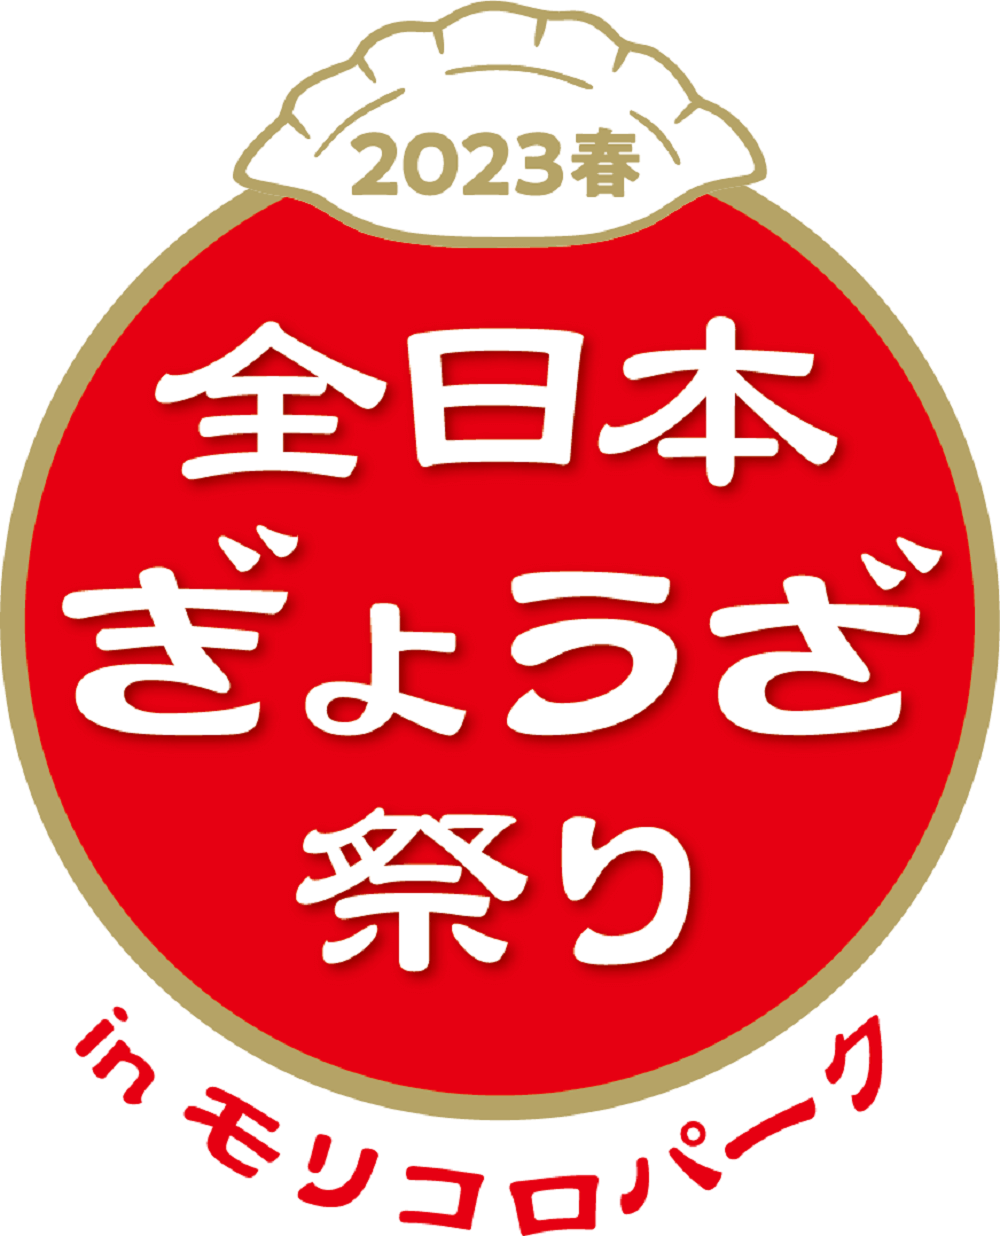 全日本ぎょうざ祭り2023春 in モリコロパーク